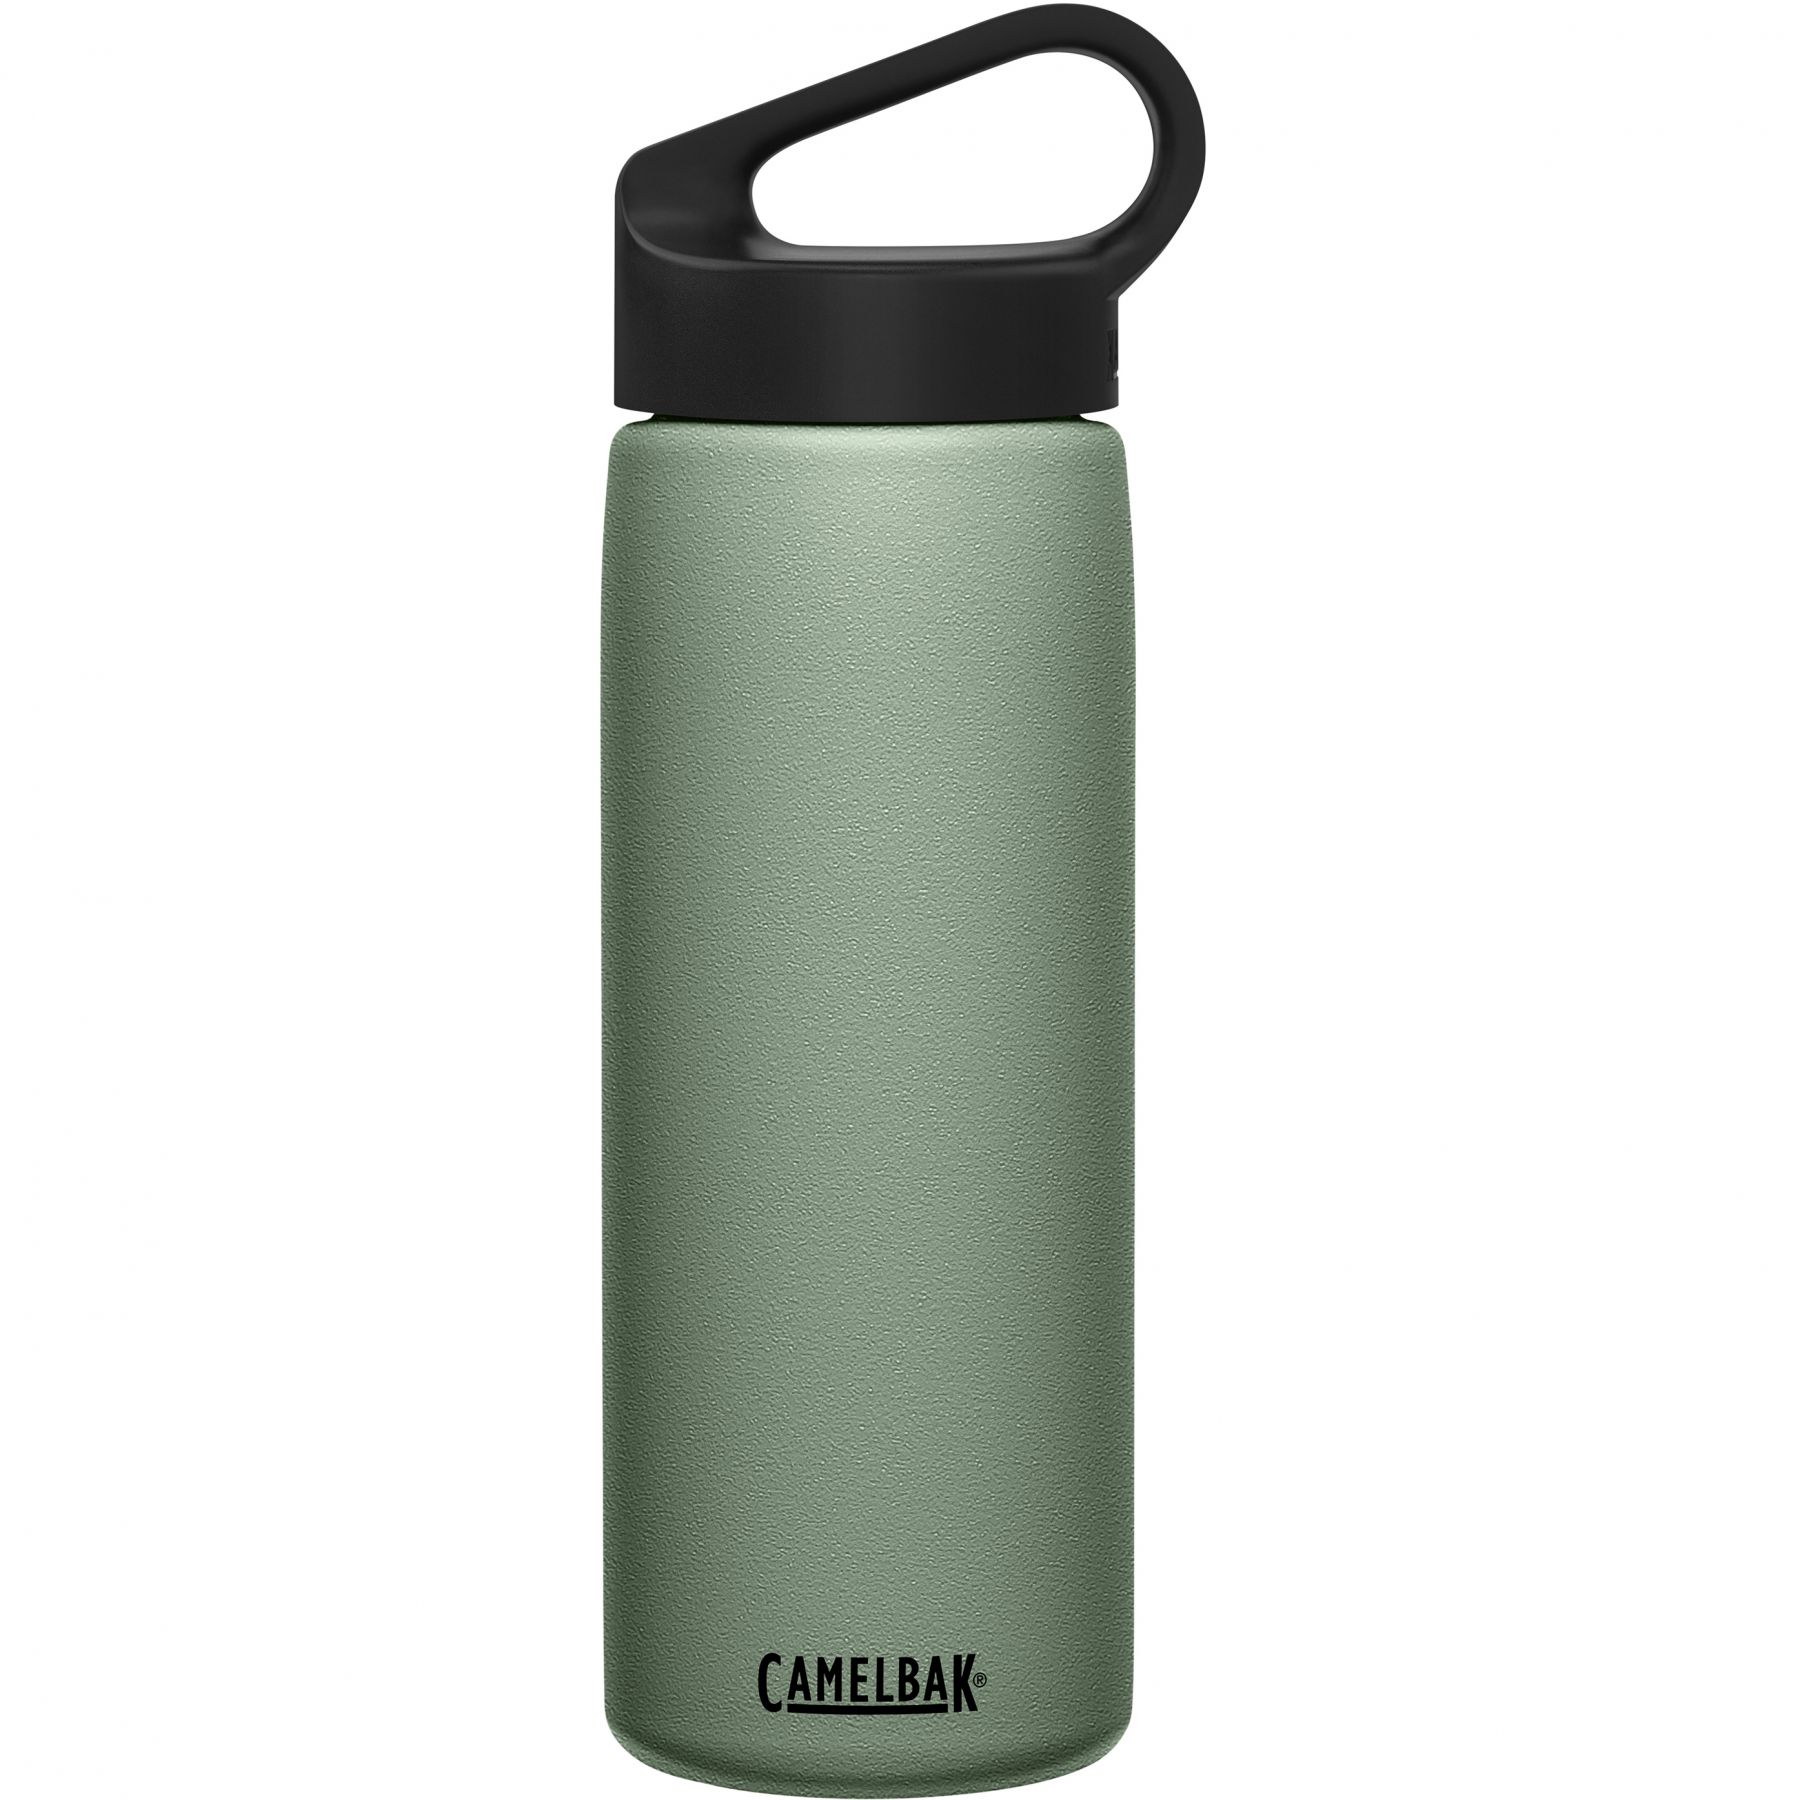 Brug CamelBak Carry Cap, drikkedunk, 0,6L, grøn til en forbedret oplevelse